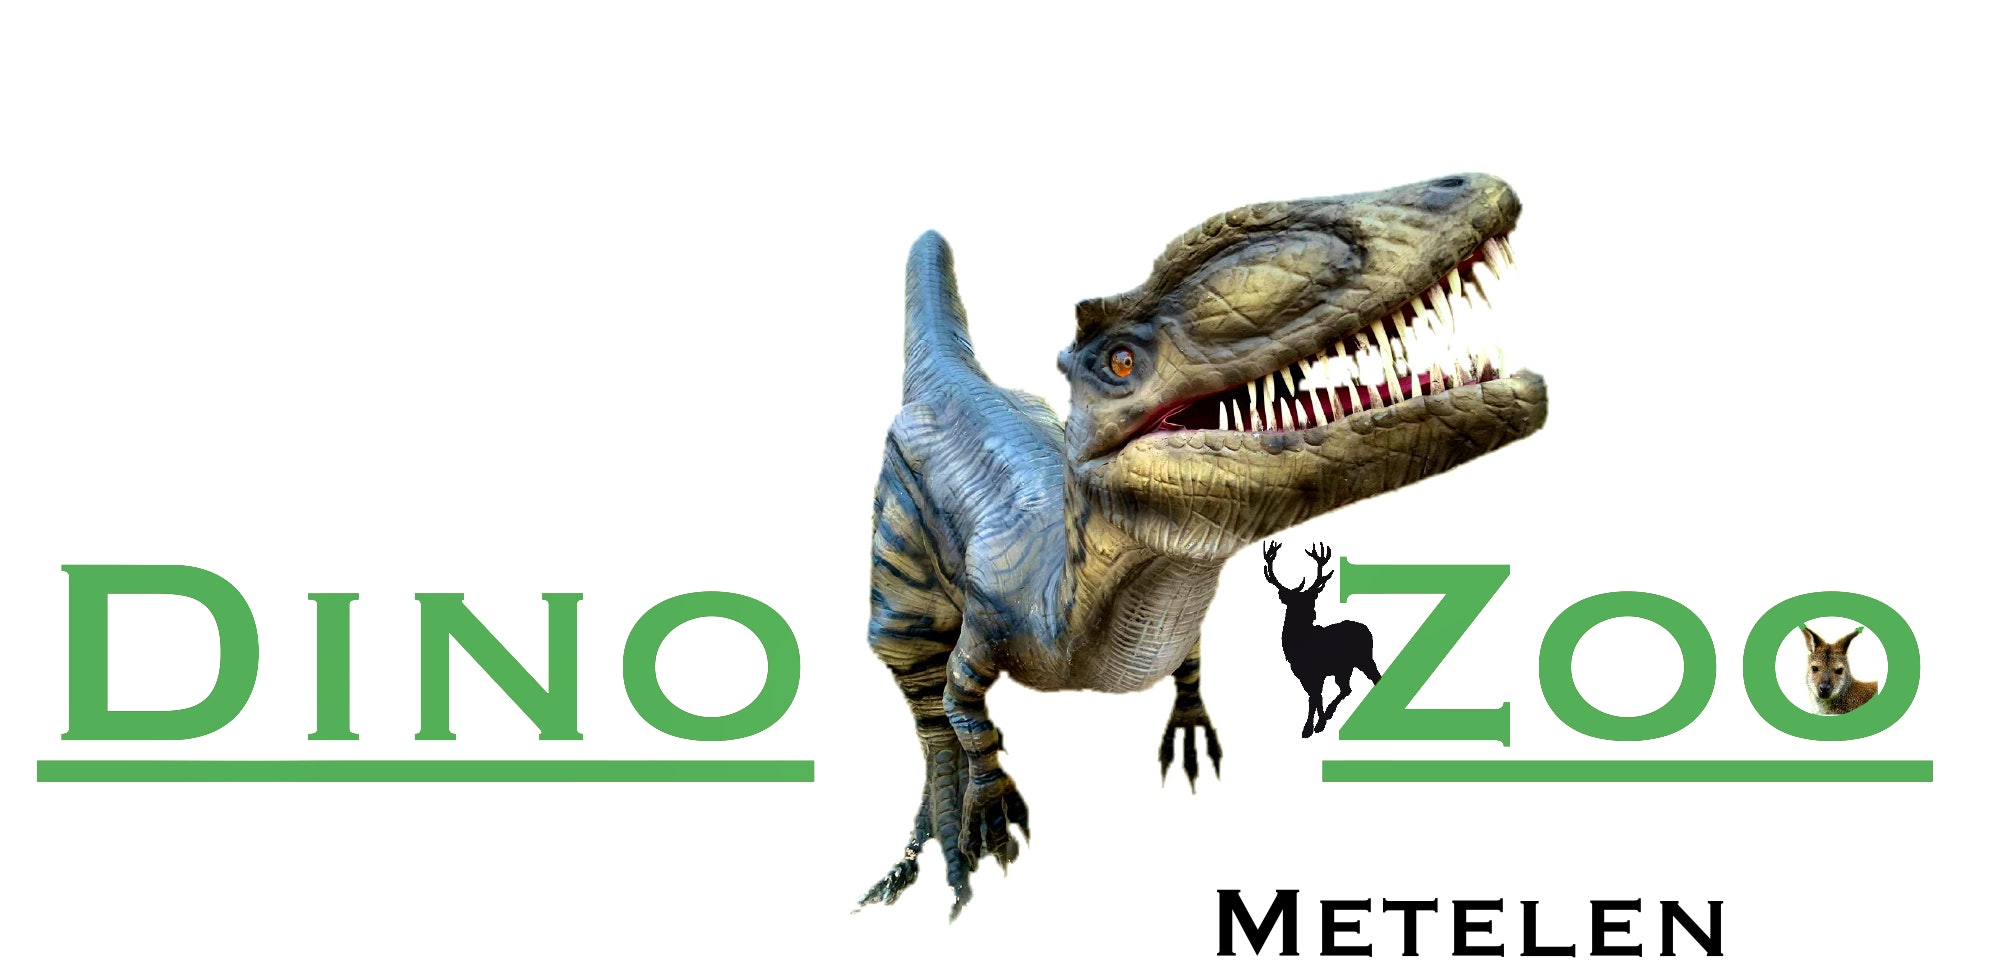 2 tickets voor Dino Zoo Metelen + 2 x €6 shoptegoed! 